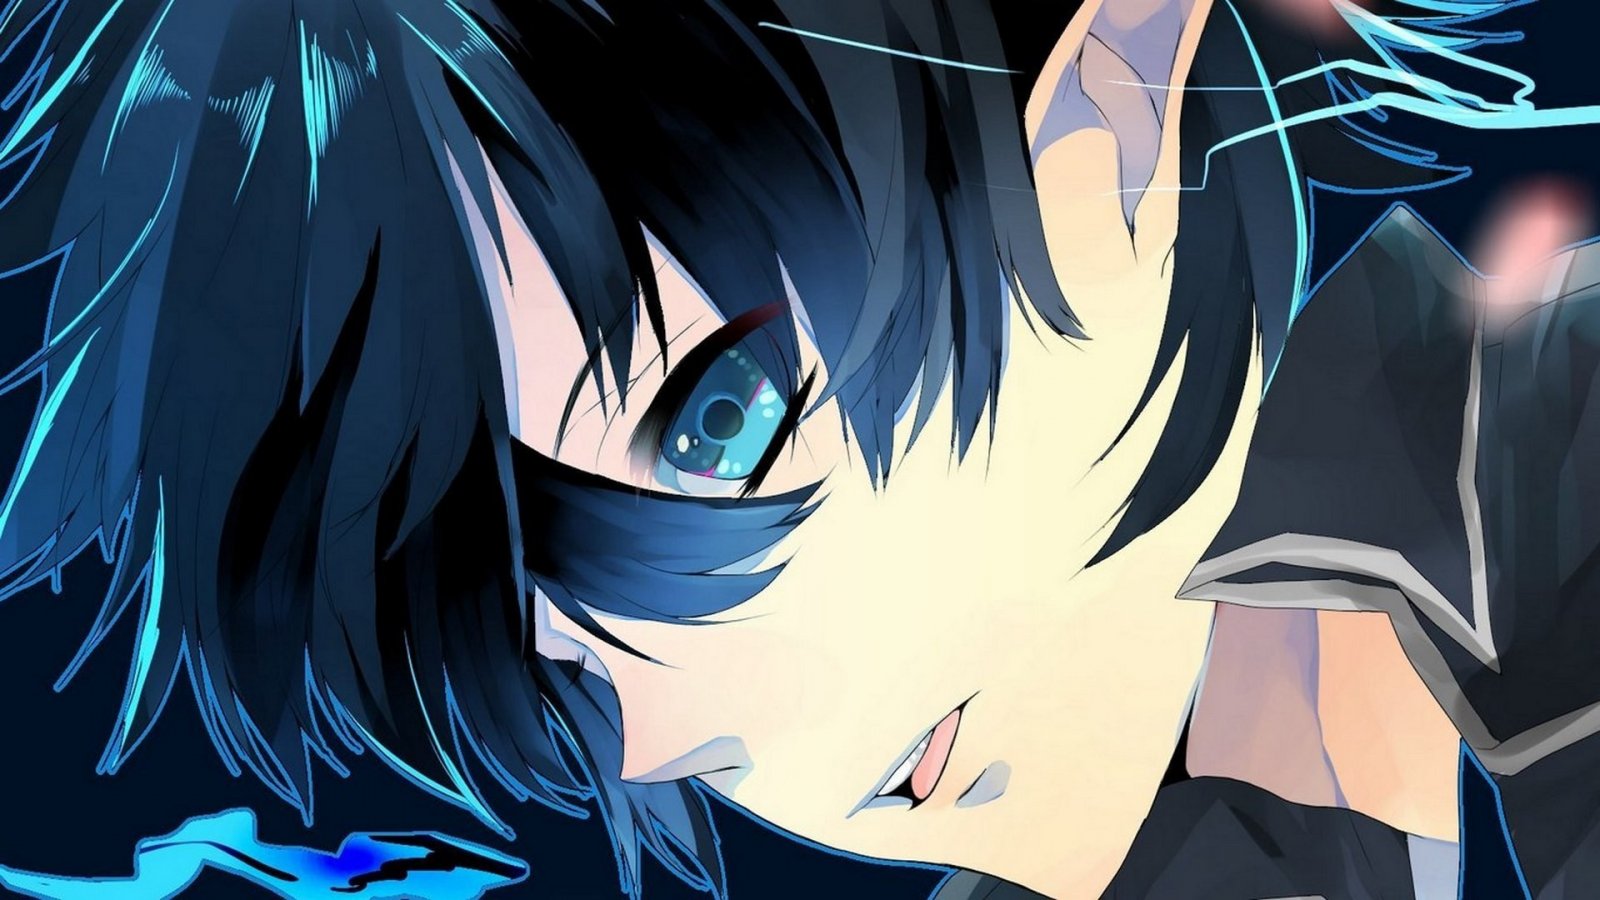 anime boy with black hair